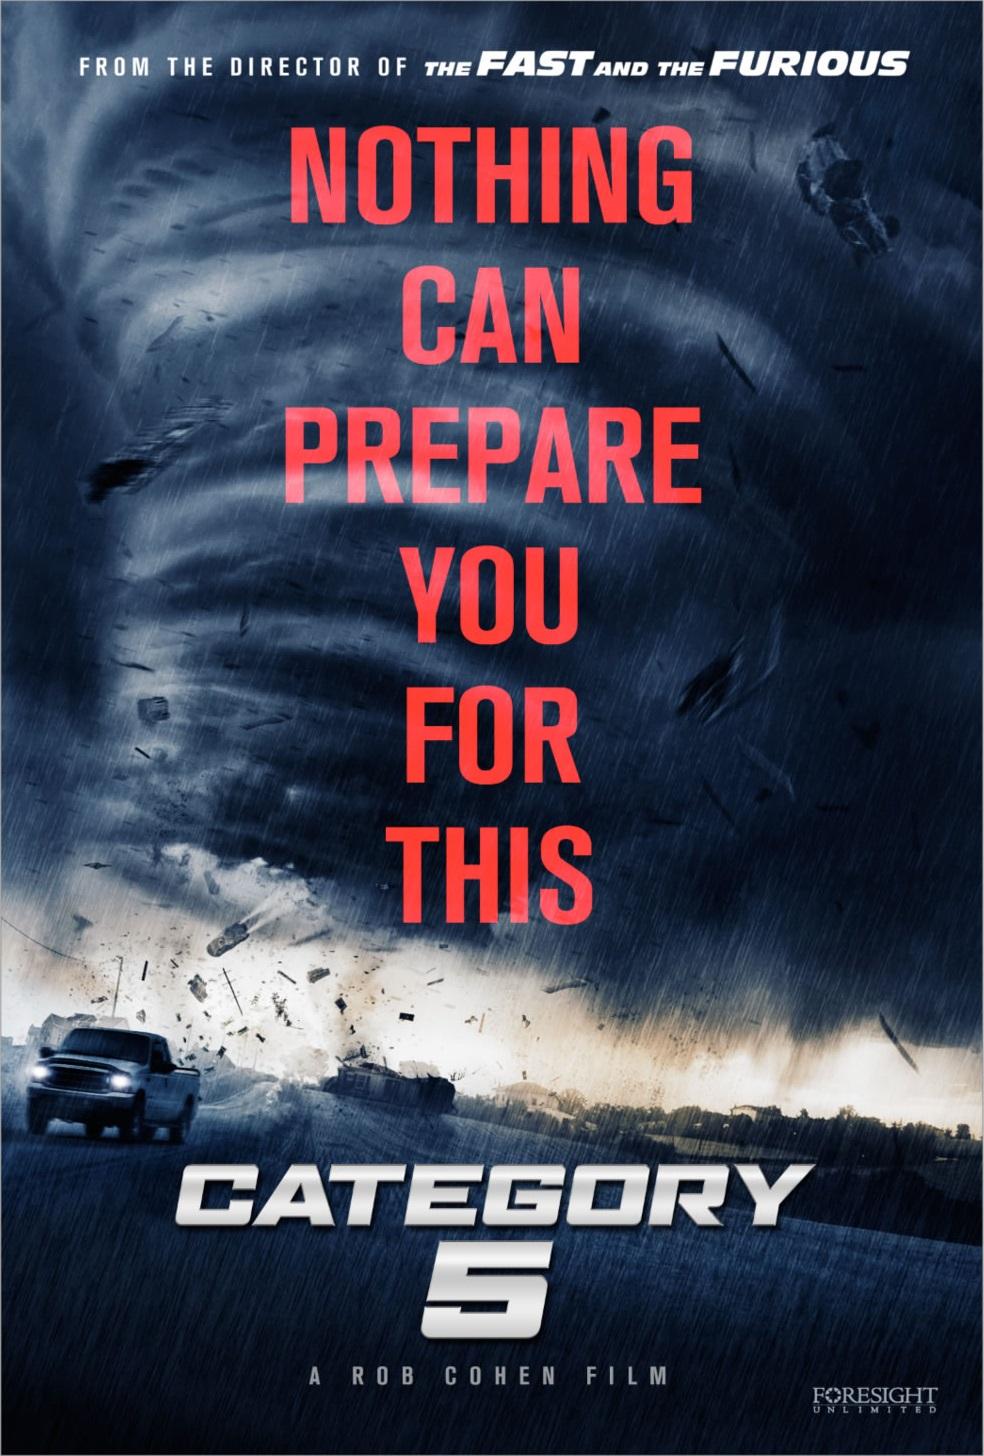 Постер фильма Ограбление в ураган | The Hurricane Heist 